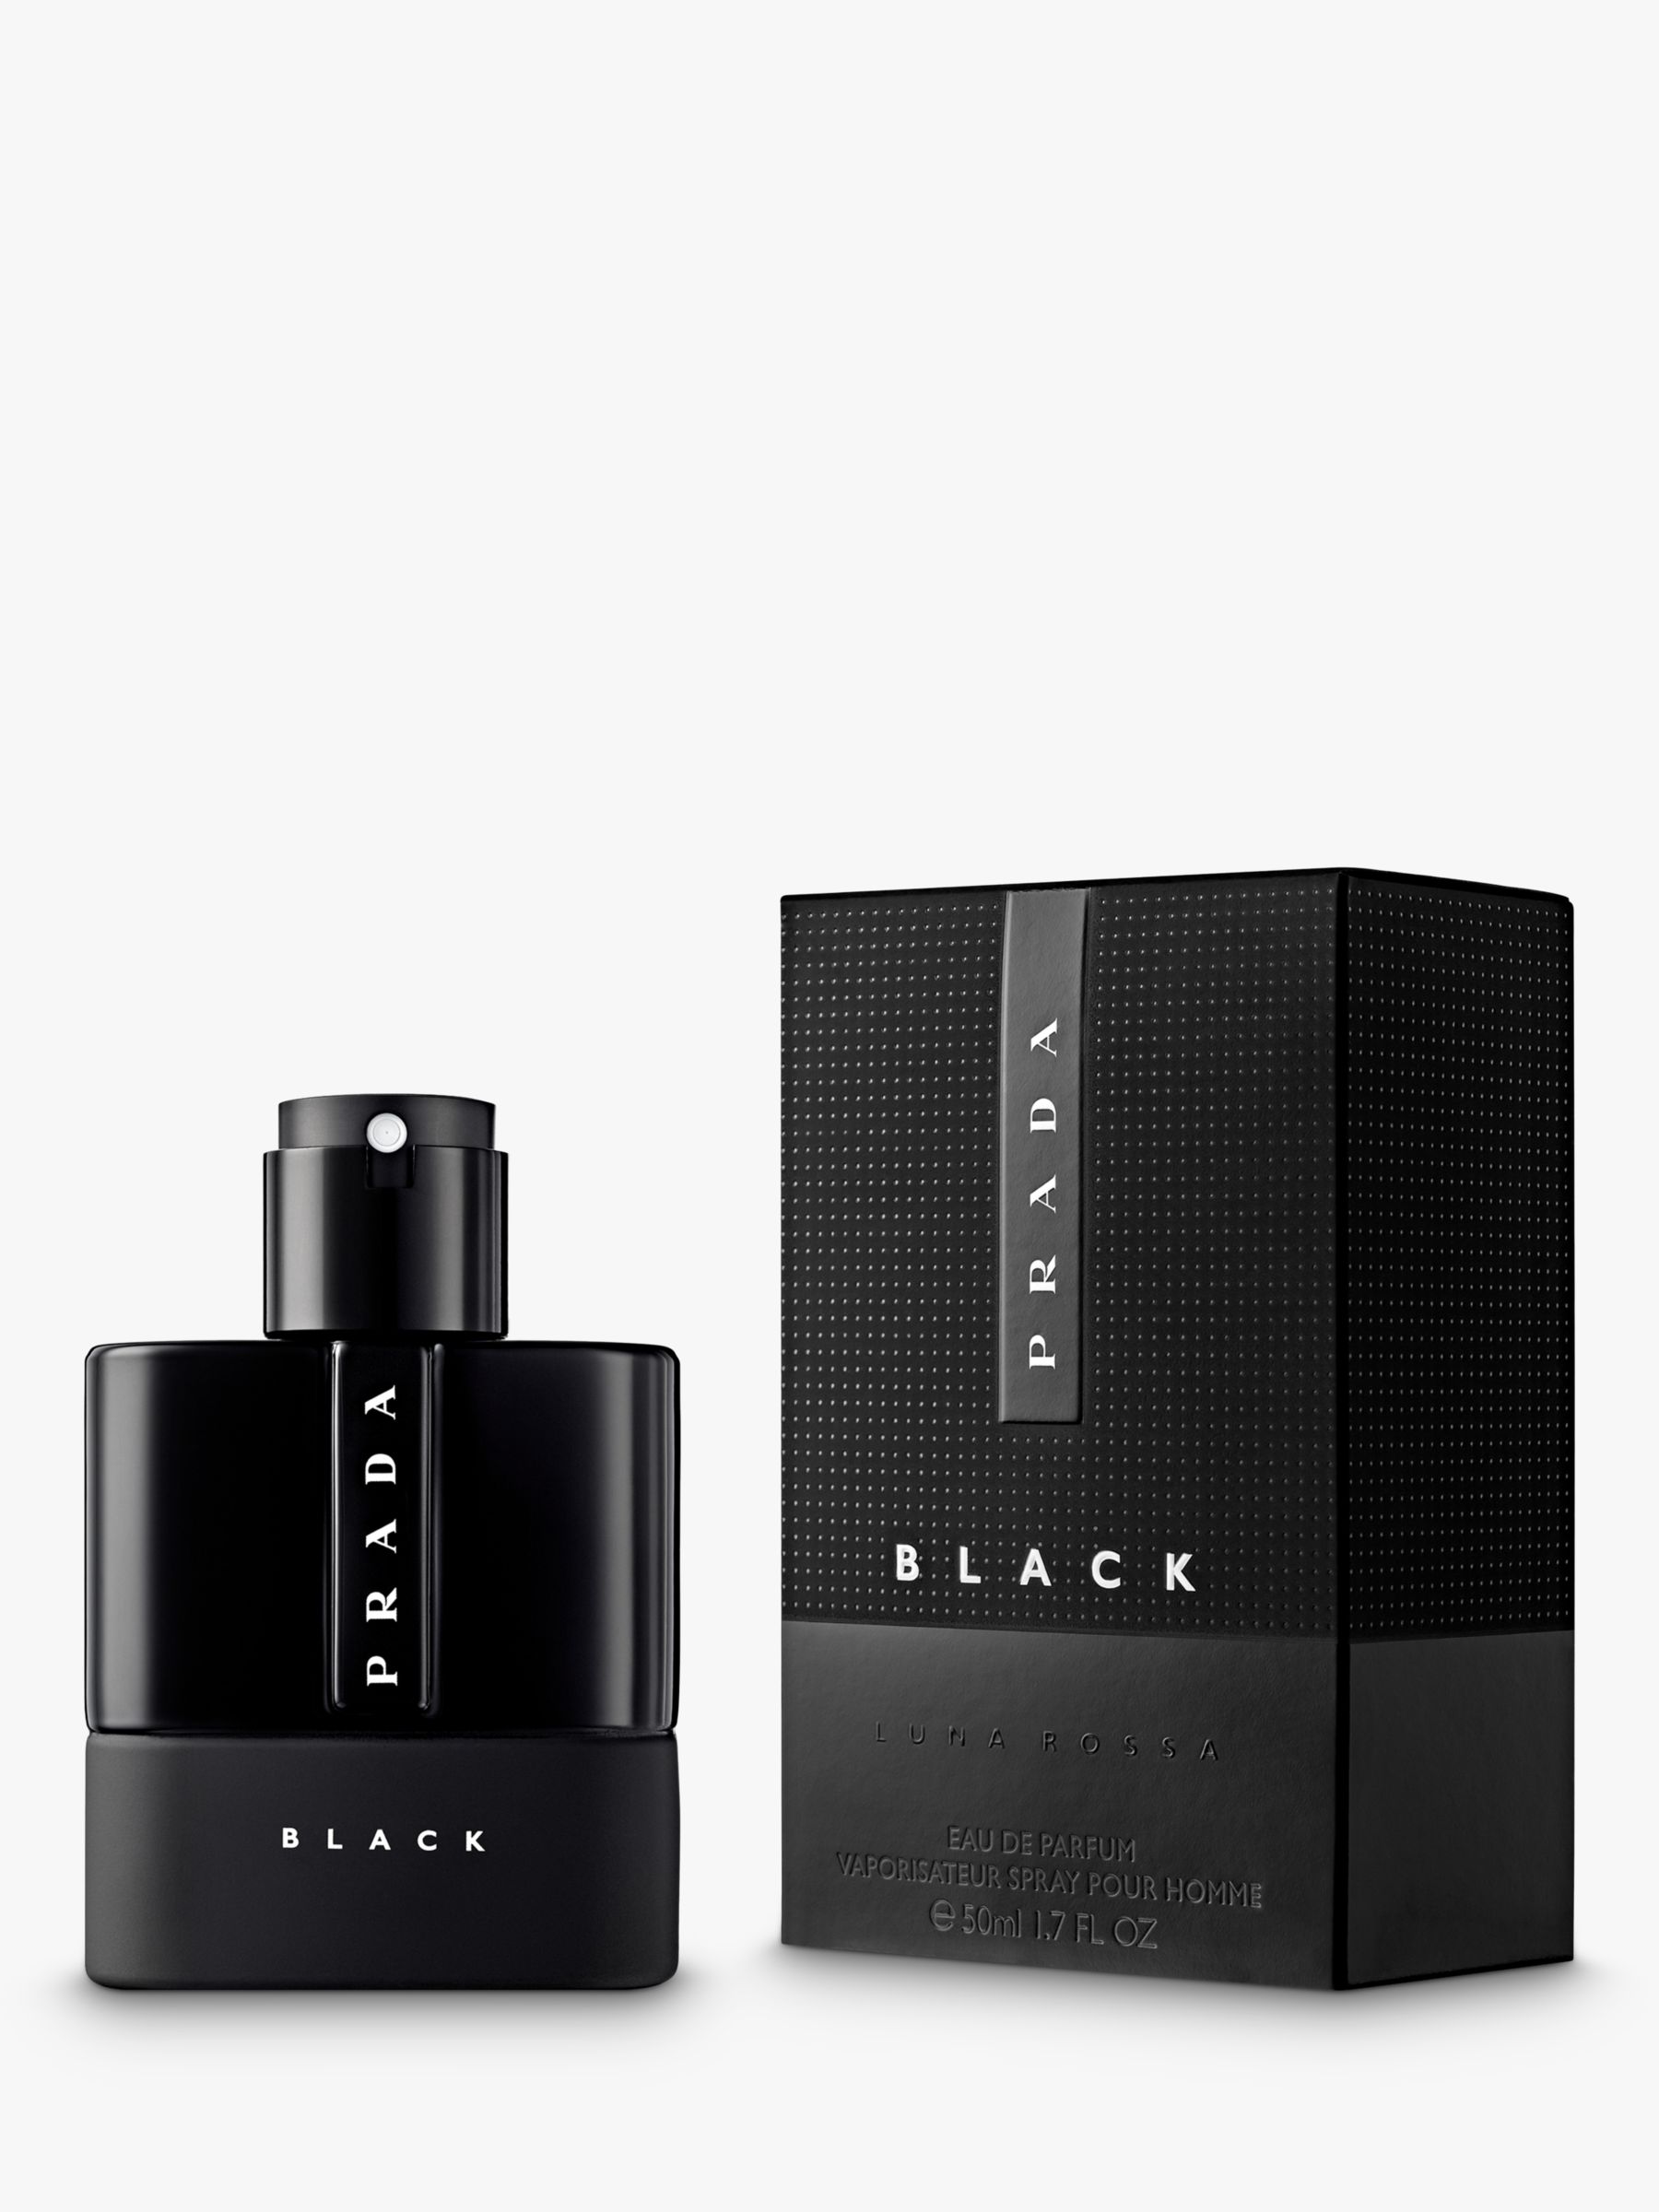 prada black perfume price